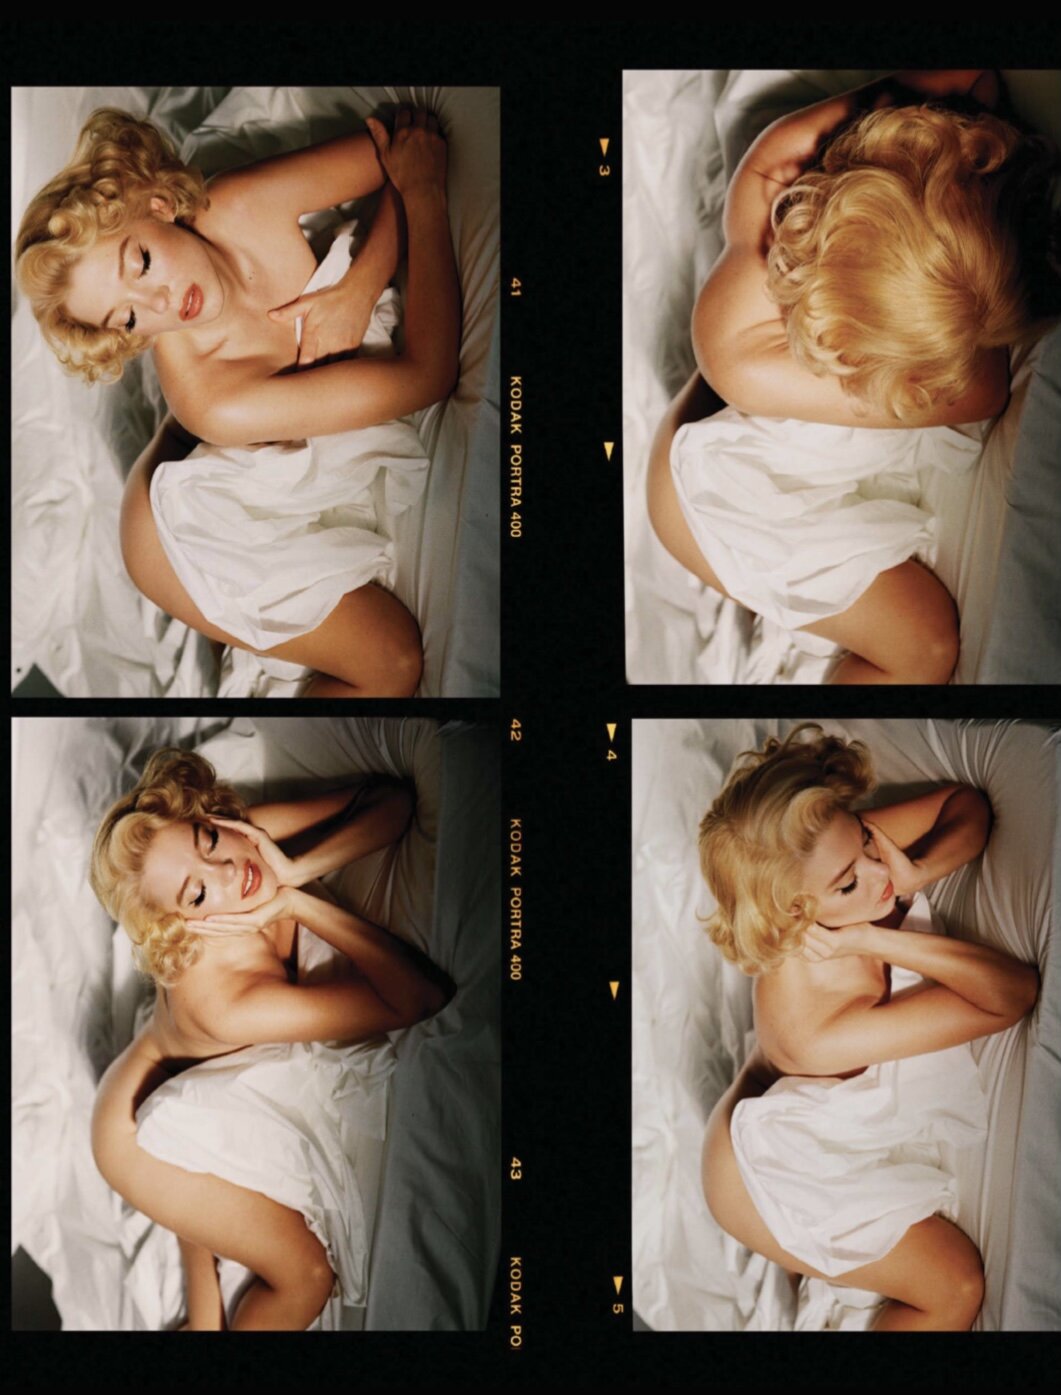 Seydoux quá hoàn hảo khi vào vai Marilyn Monroe